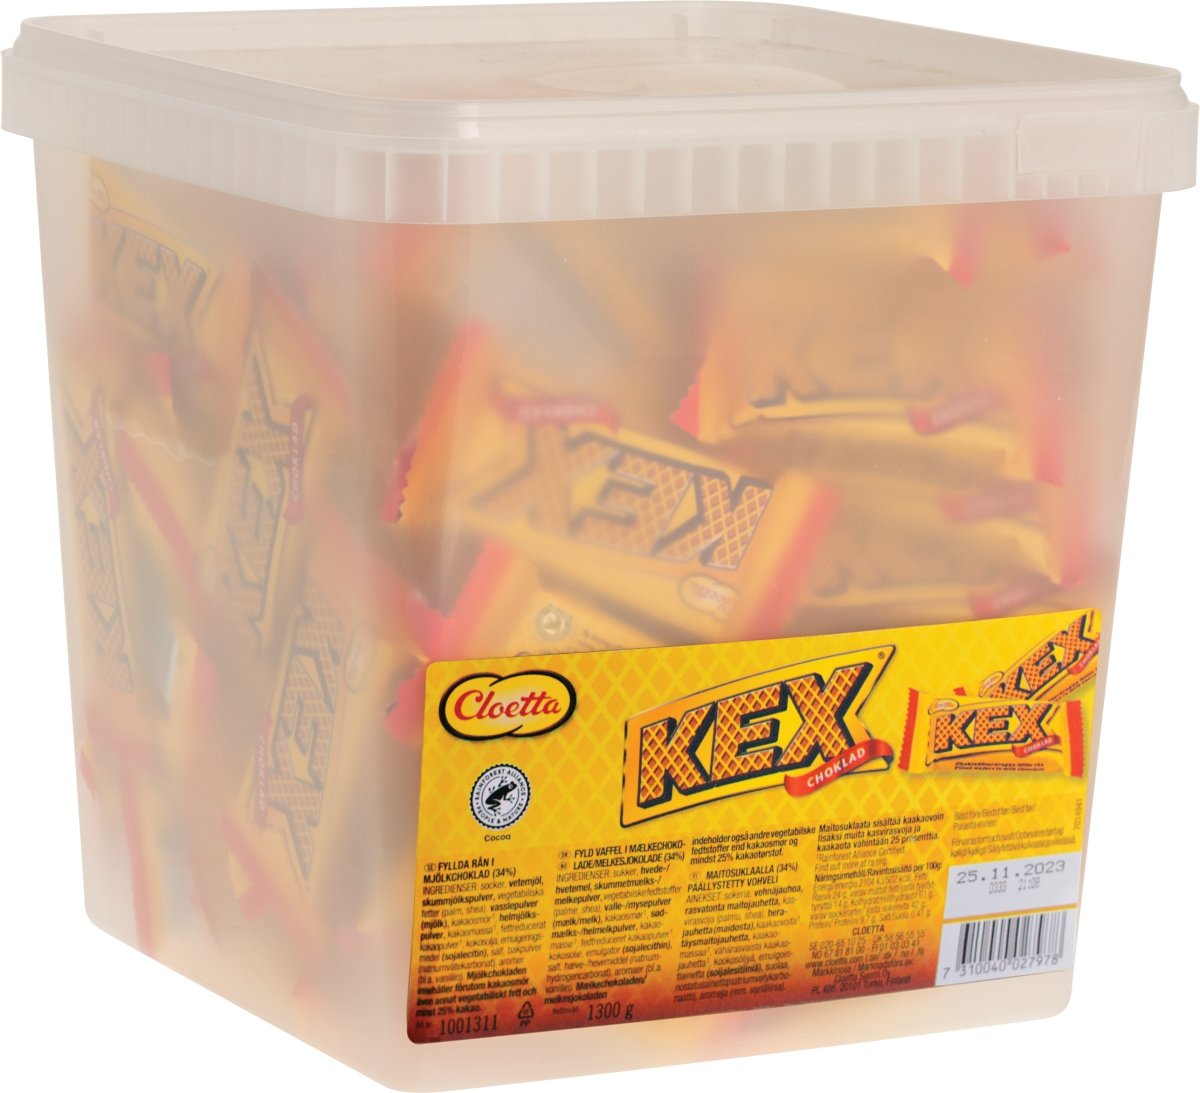 Kex Mini Kiks, 100 pakker á 13 g